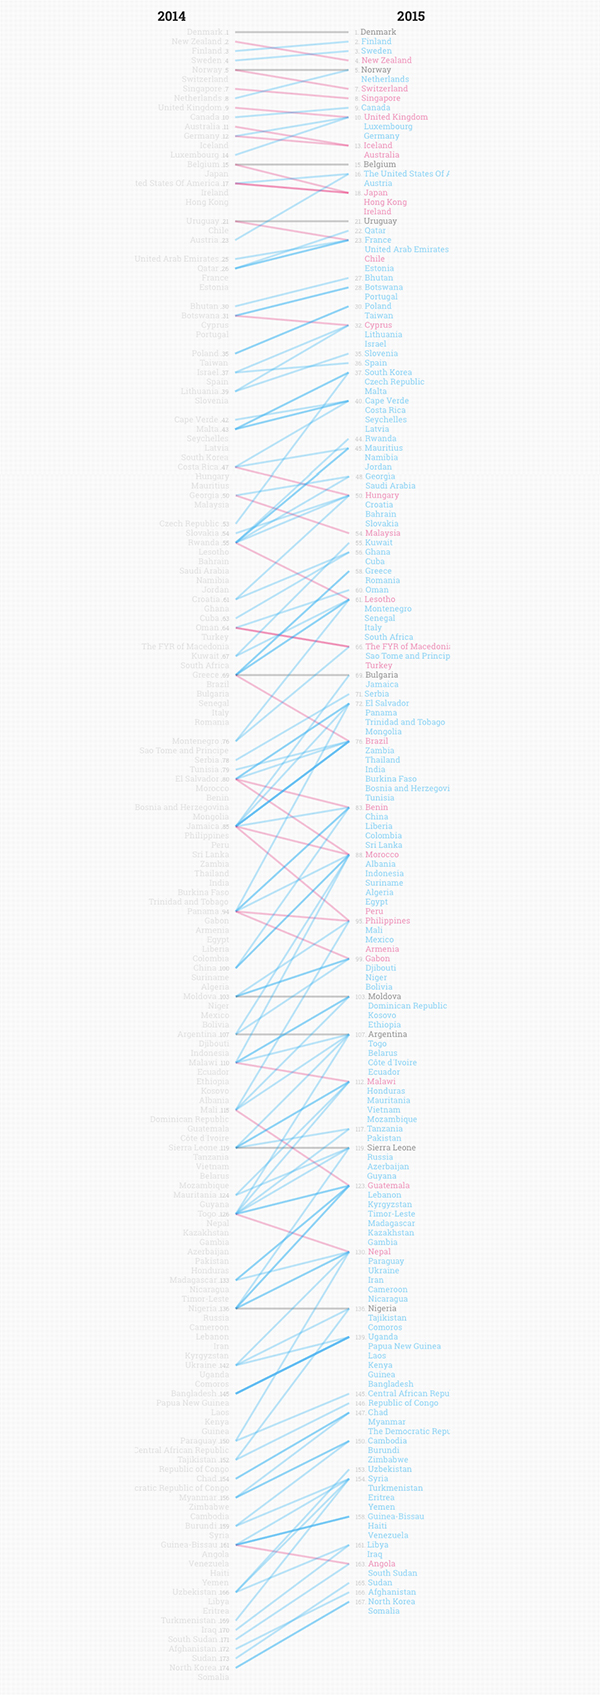 Posición de cada país/territorio en el Índice de Percepción de la Corrupción, 2014 vs 2015